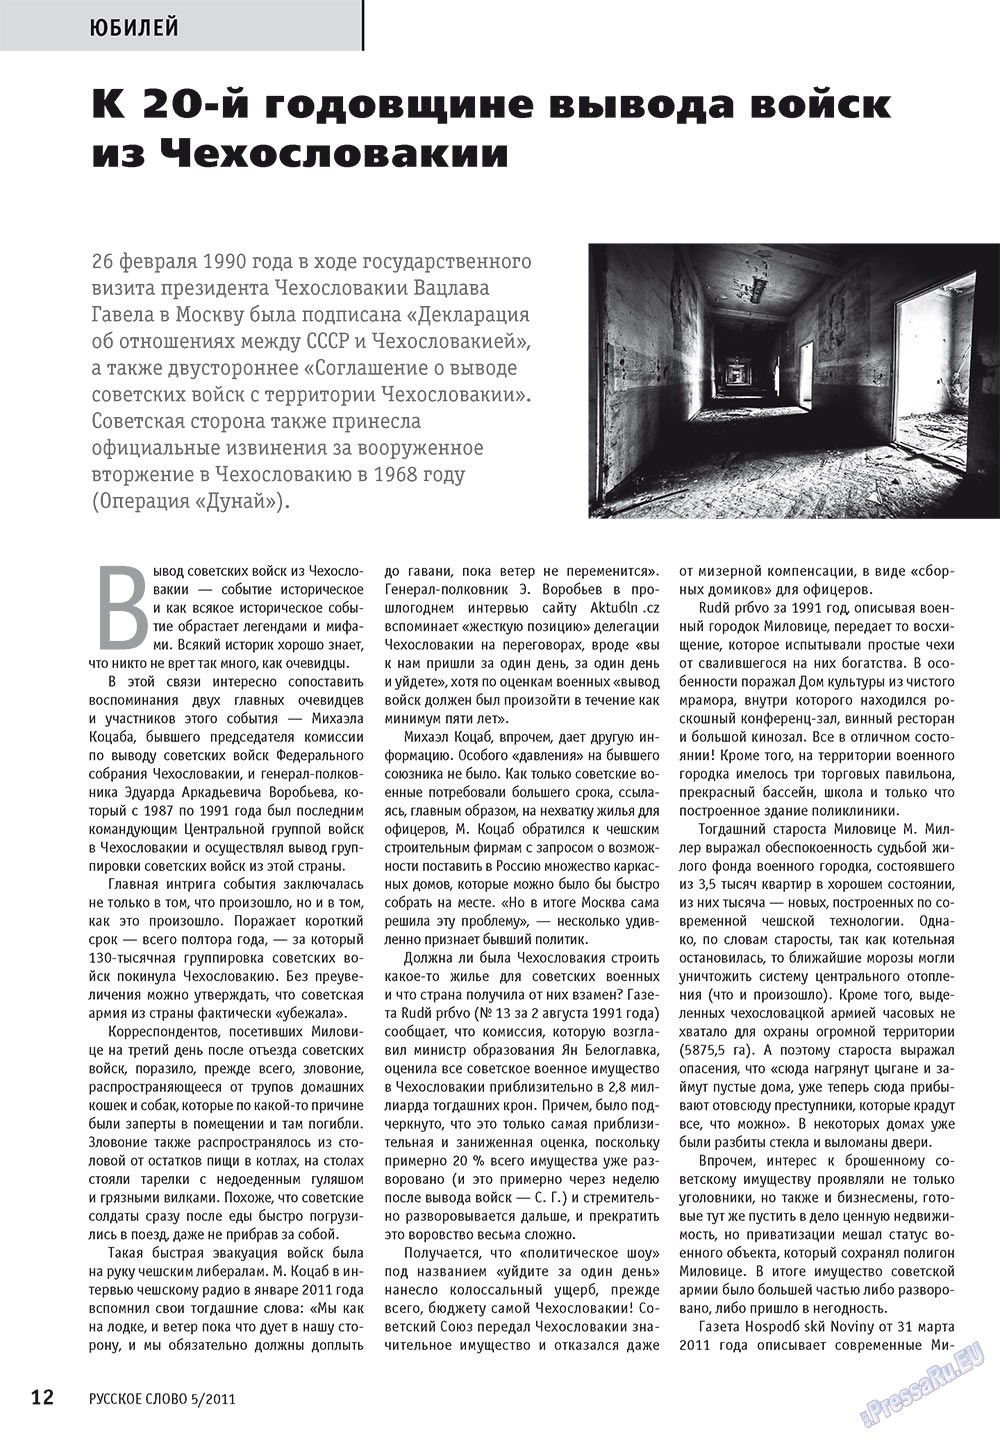 Русское слово, журнал. 2011 №5 стр.14